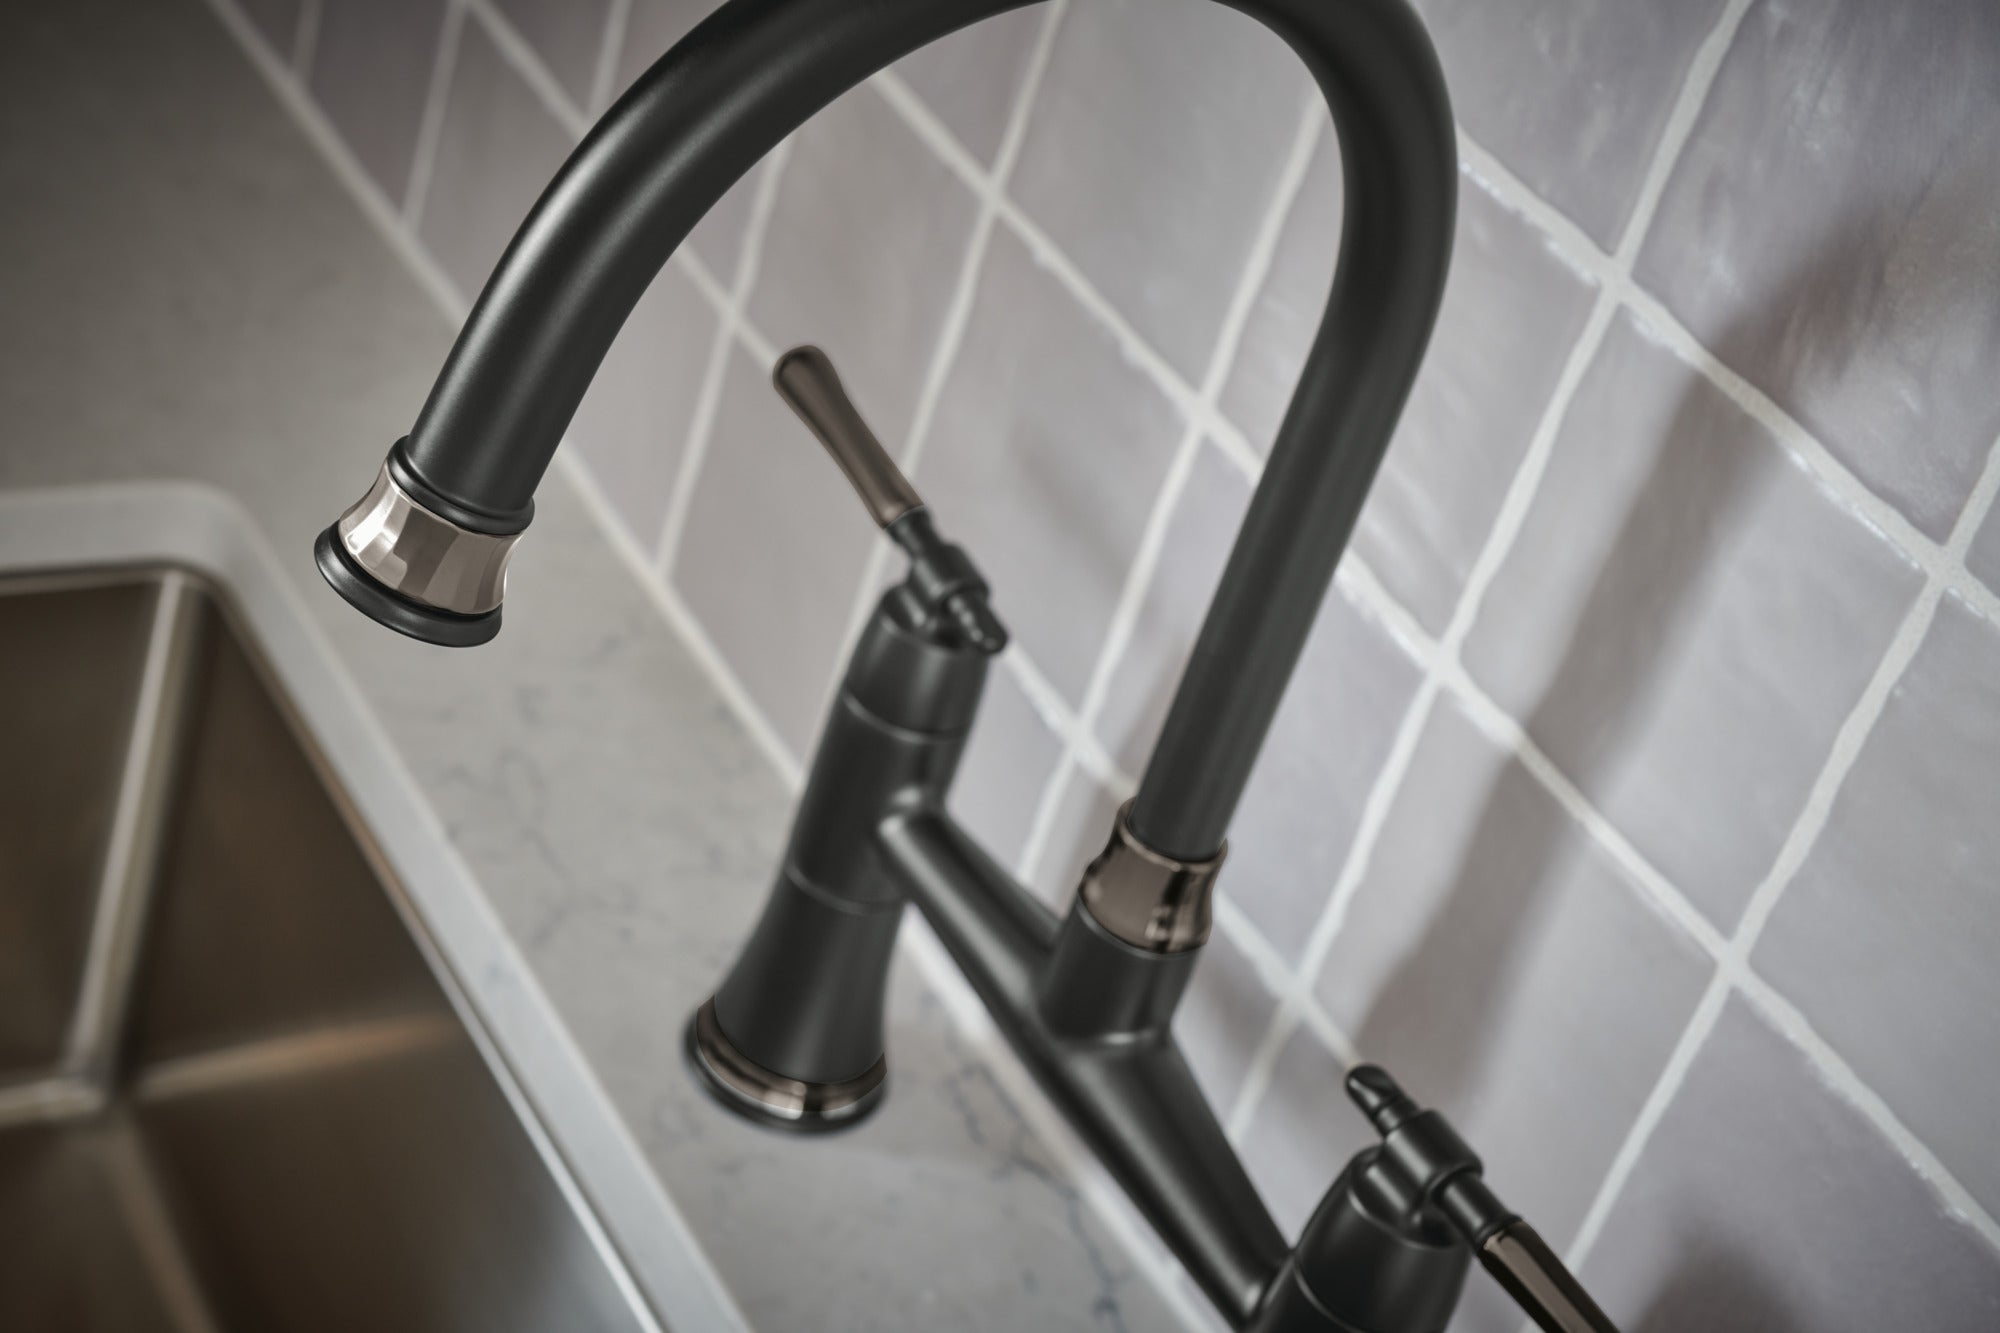 matte black / brilliance black onyx kitchen faucet